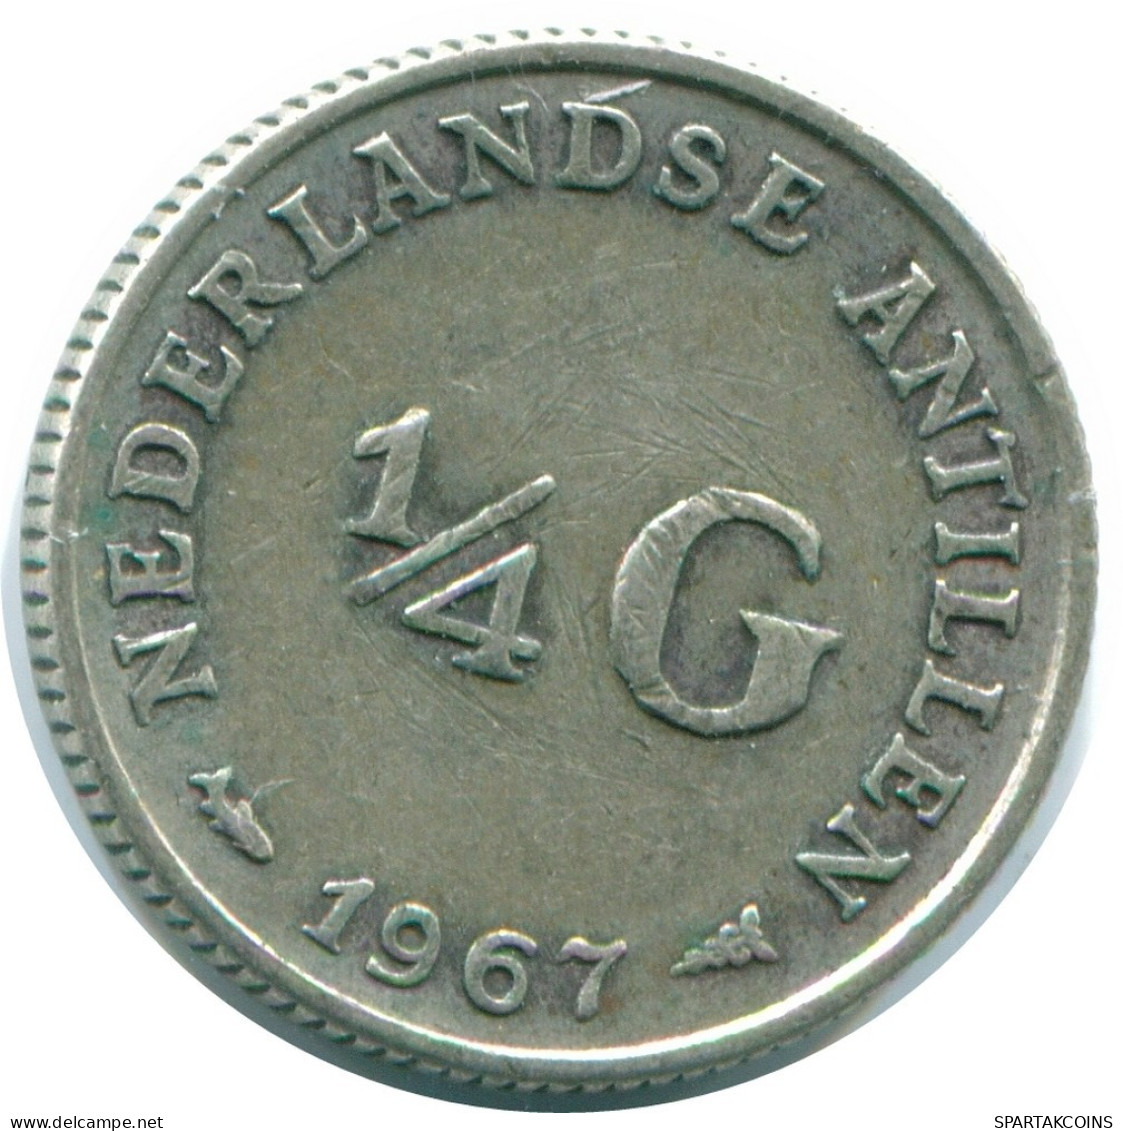 1/4 GULDEN 1967 NIEDERLÄNDISCHE ANTILLEN SILBER Koloniale Münze #NL11582.4.D.A - Niederländische Antillen